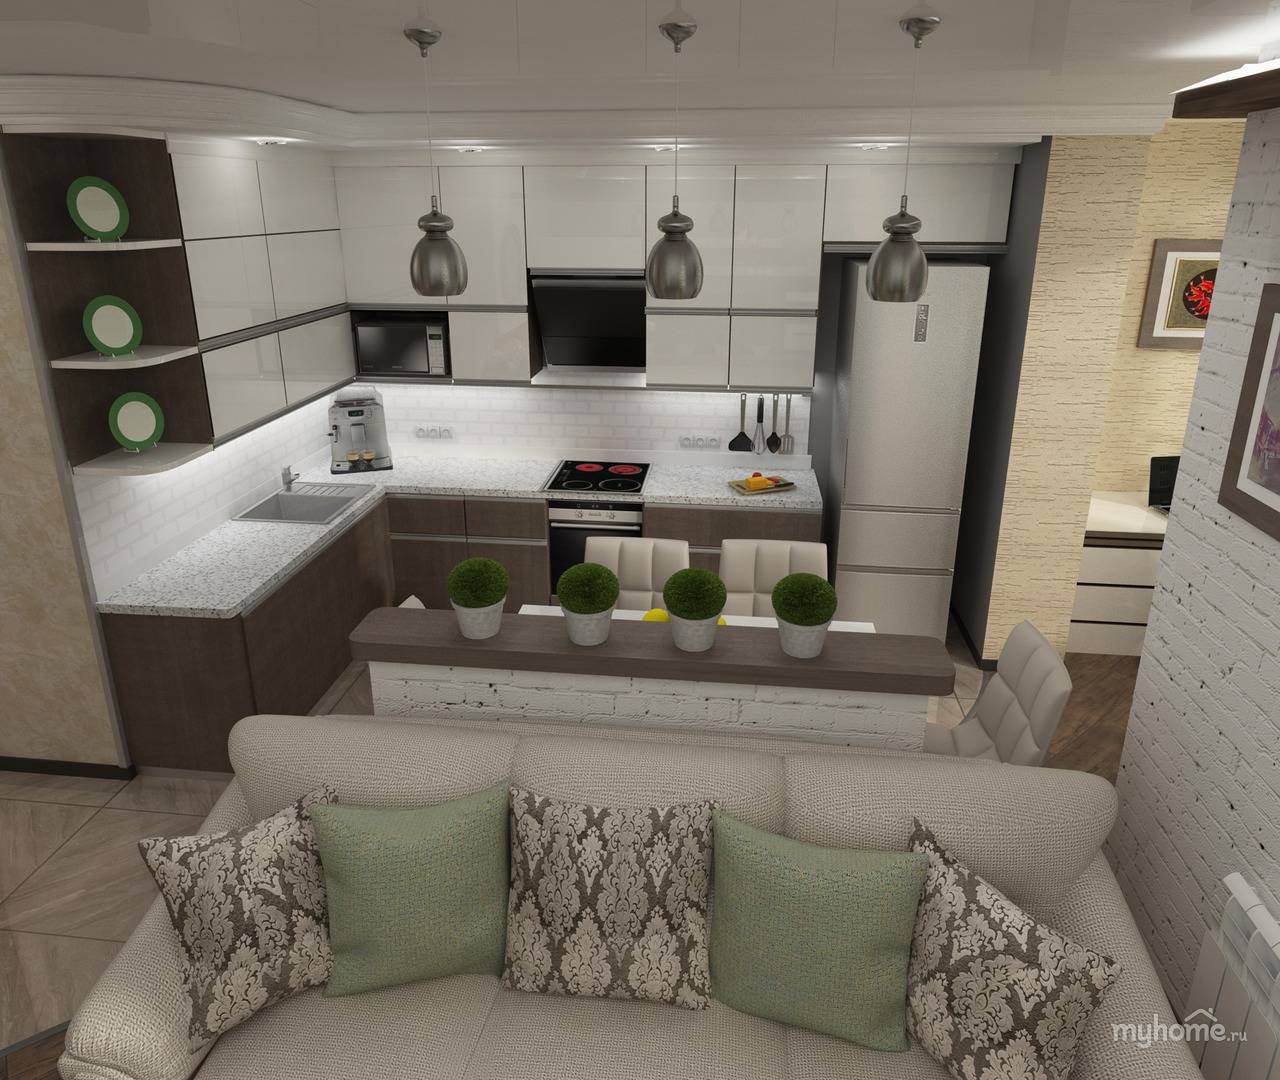 Дизайн кухни-гостиной 20 кв.м: фото интерьеров, планировок, советы дизайнеров